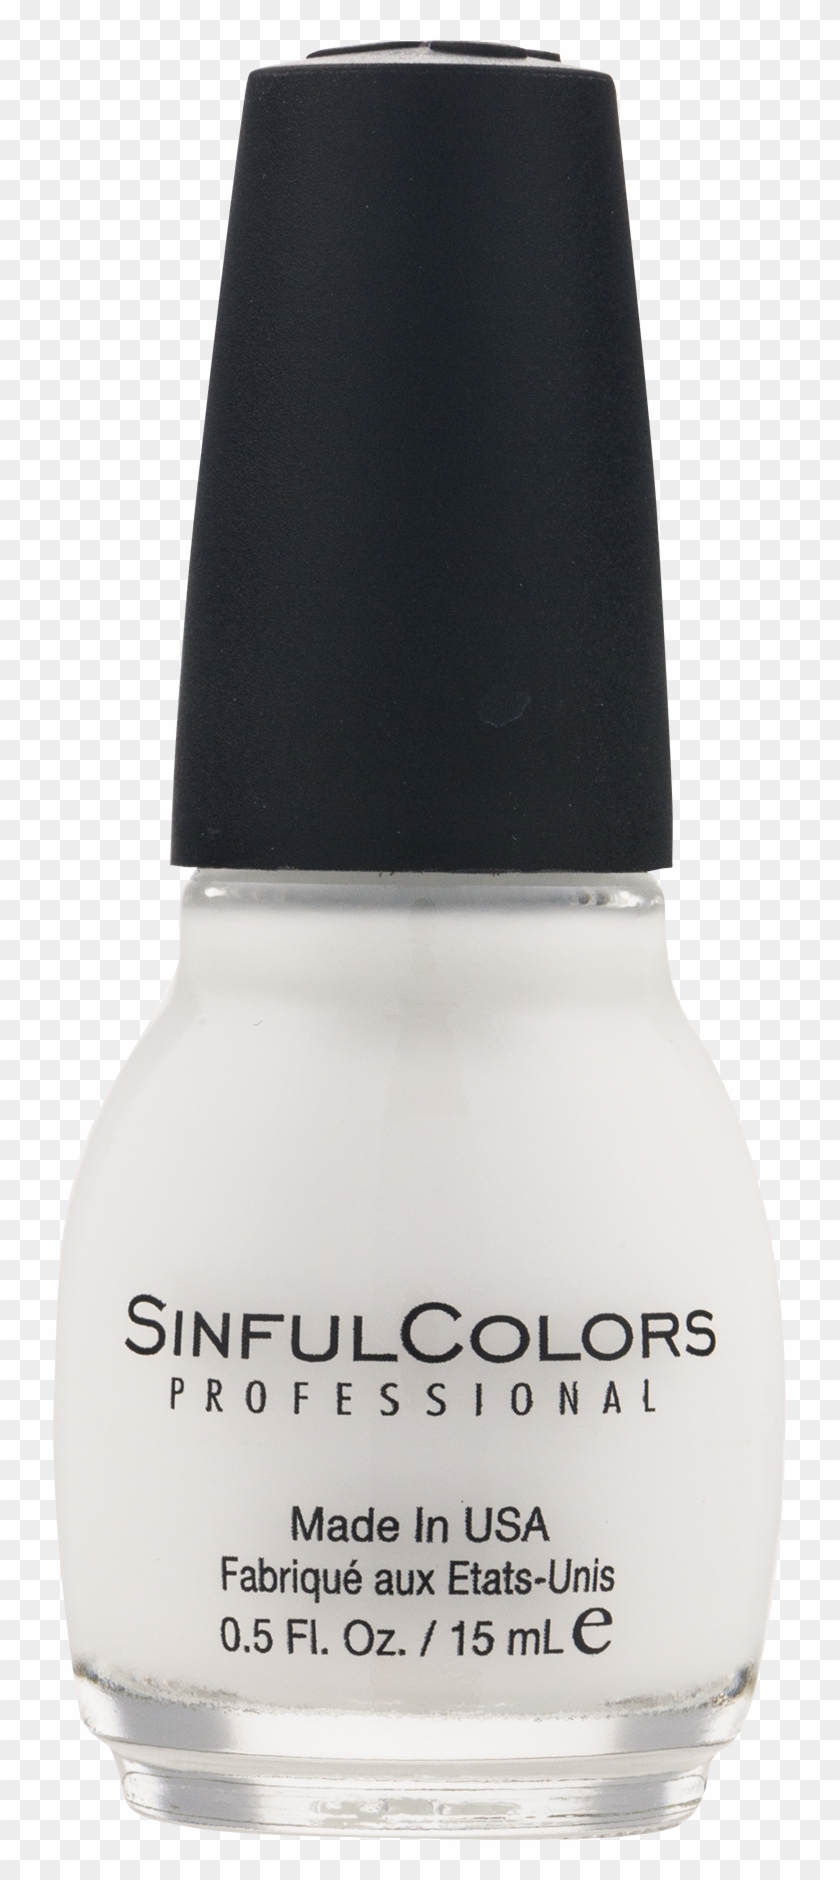 Sinful Colors Professional Nail Polish, Tokyo Pearl, - Nail Polish Clipart #2304400